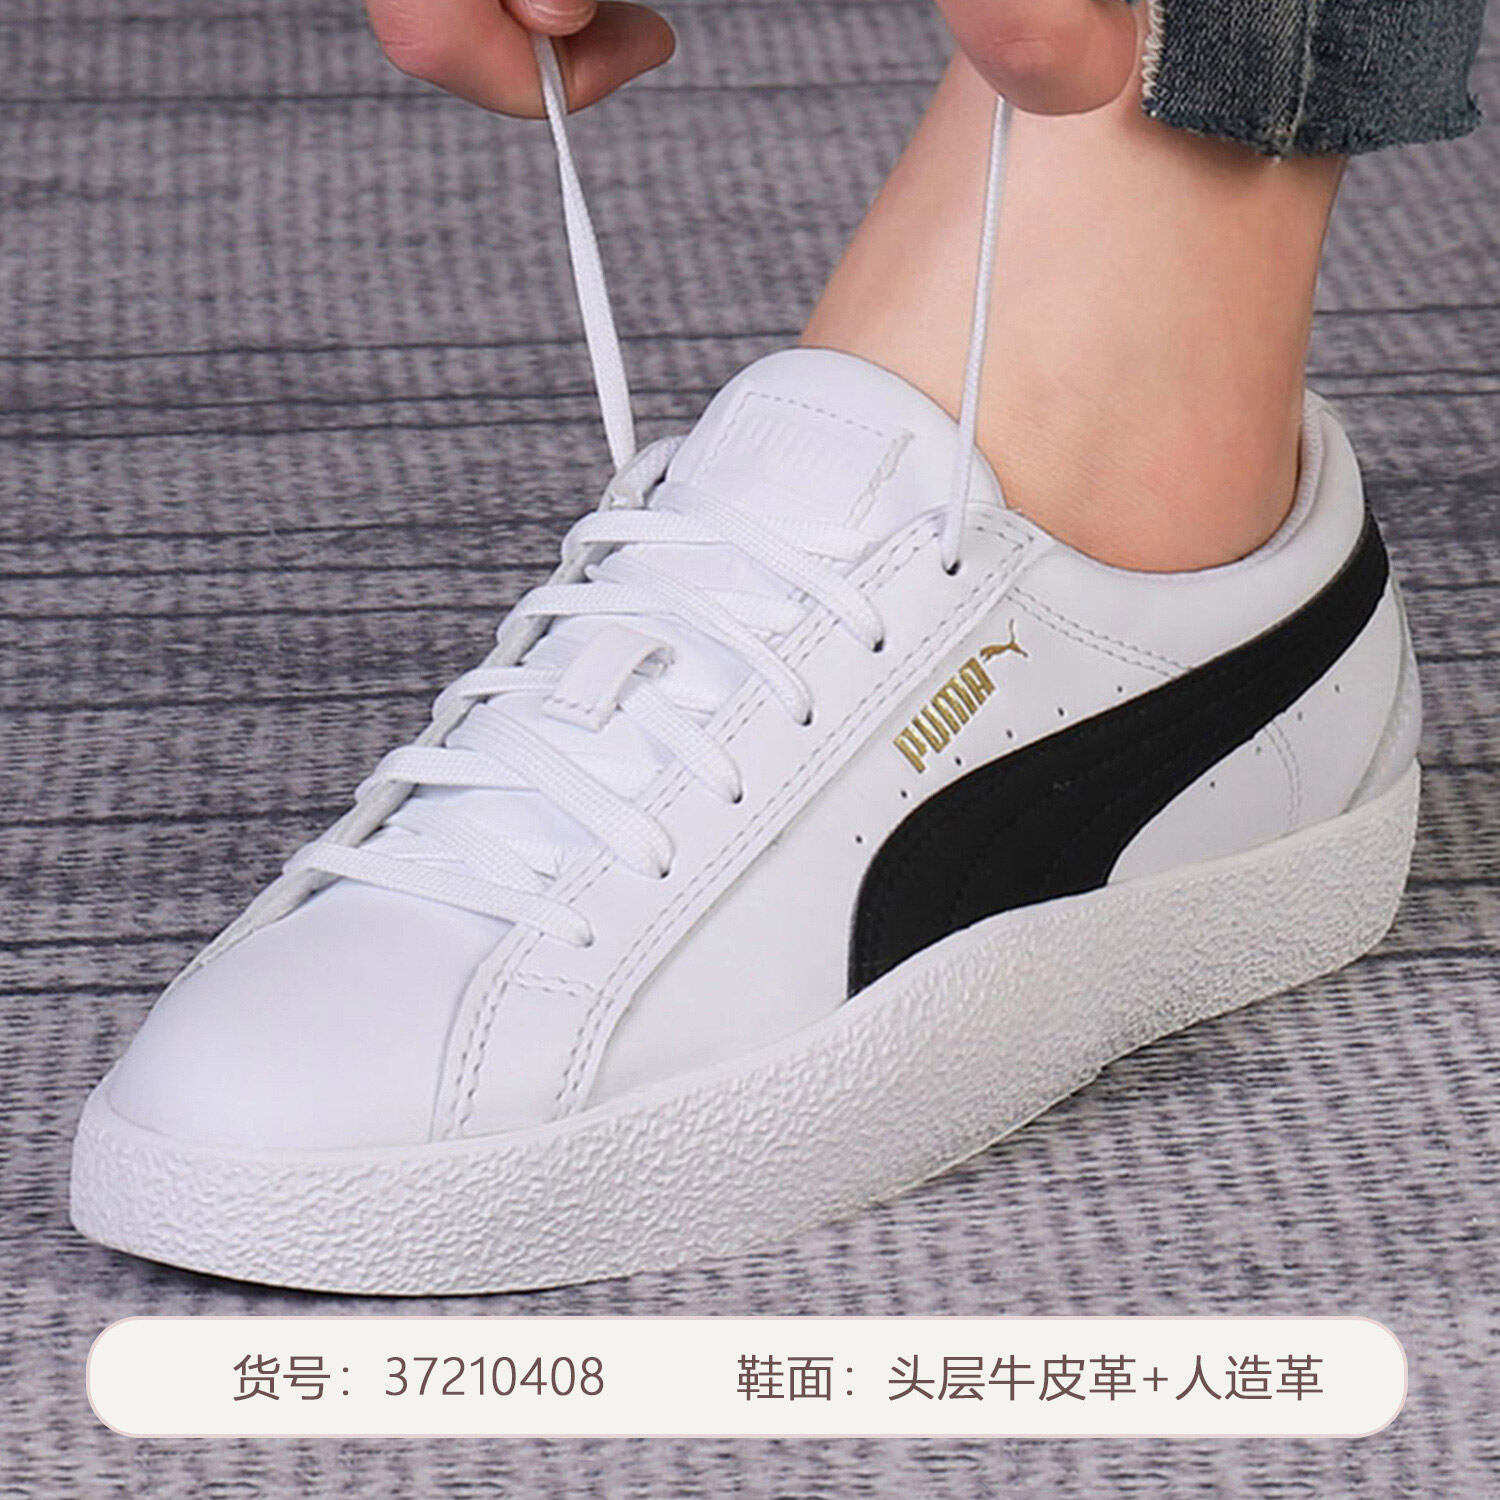 puma shoes official website